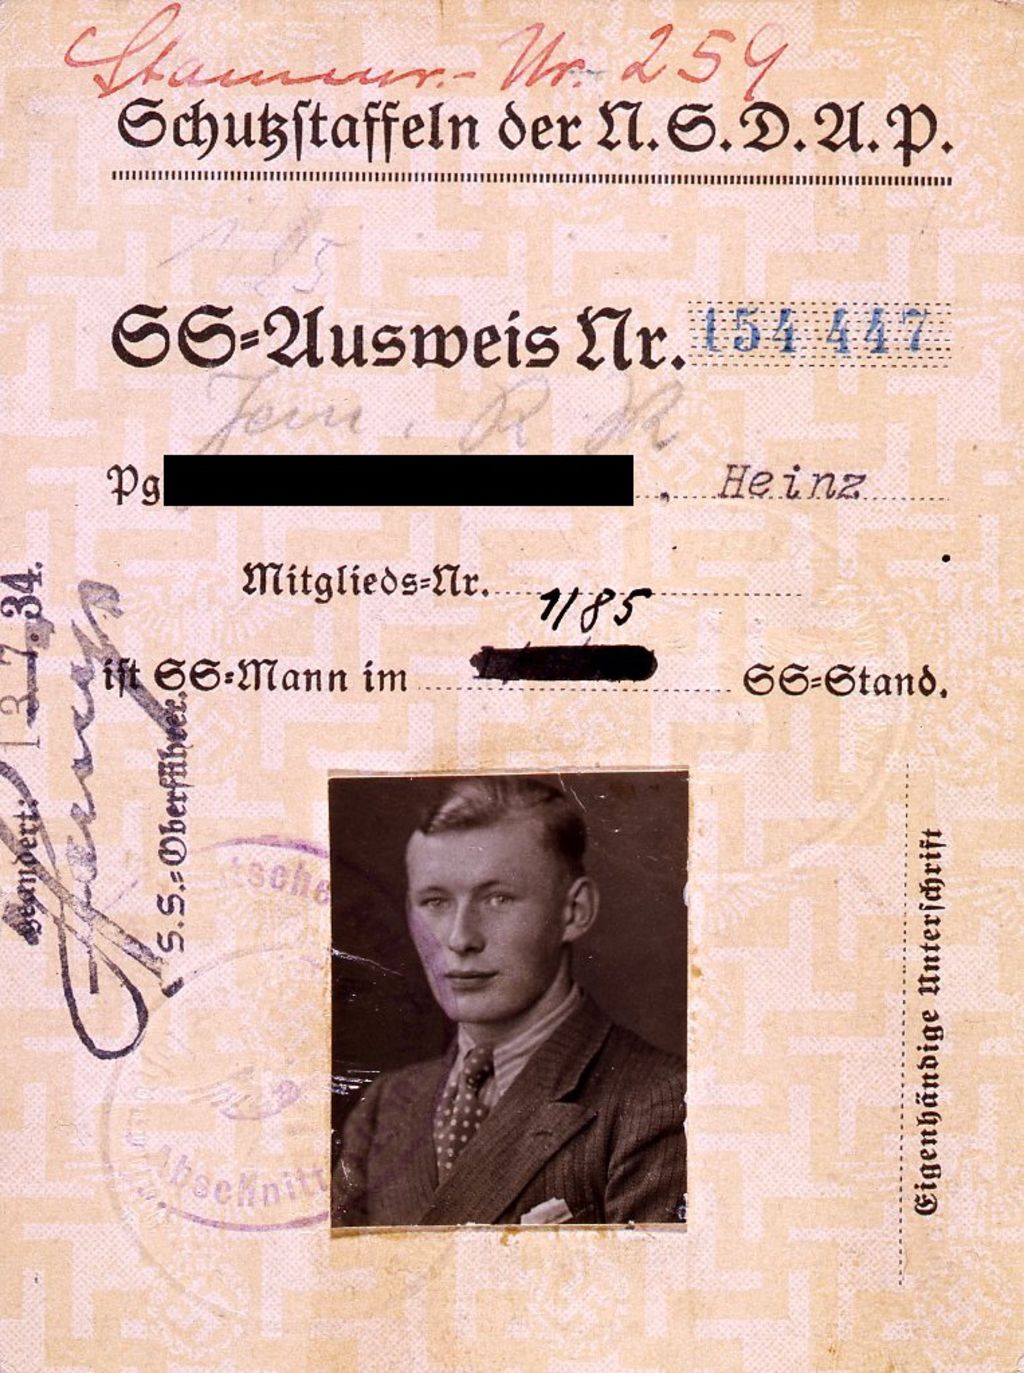 Exponat: Ausweis eines SS-Angehörigen, 1934